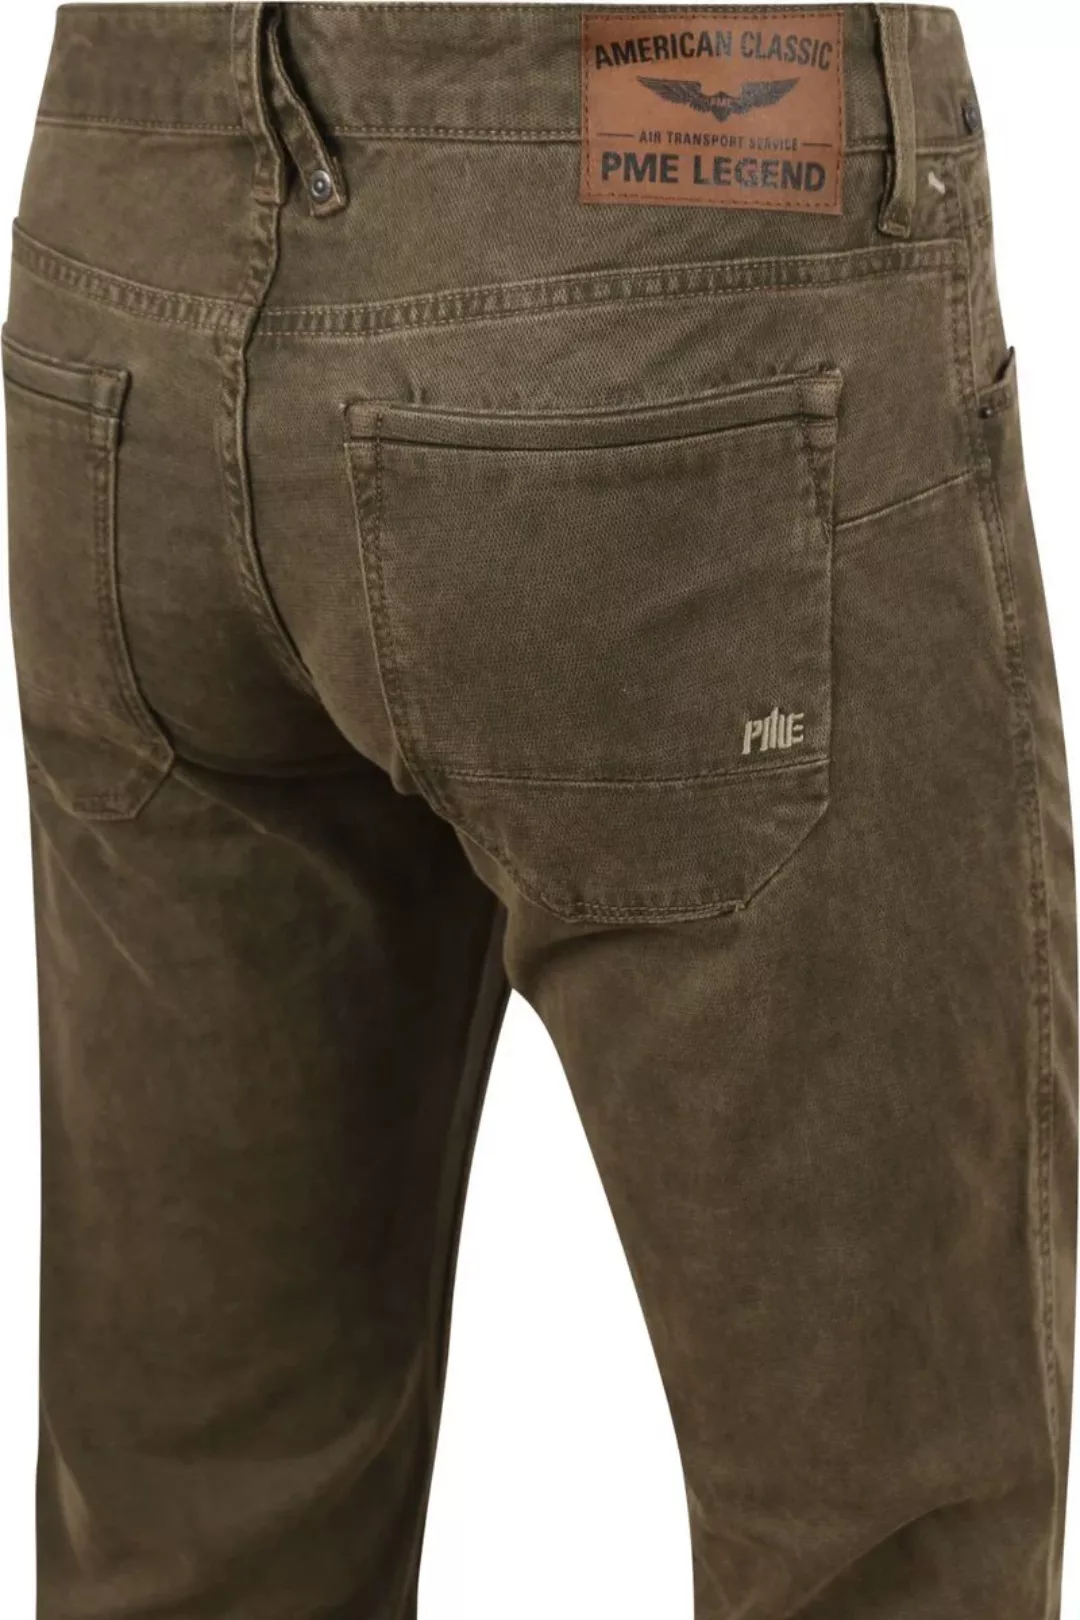 PME Legend Nightflight Jeans Olivgrün - Größe W 31 - L 34 günstig online kaufen